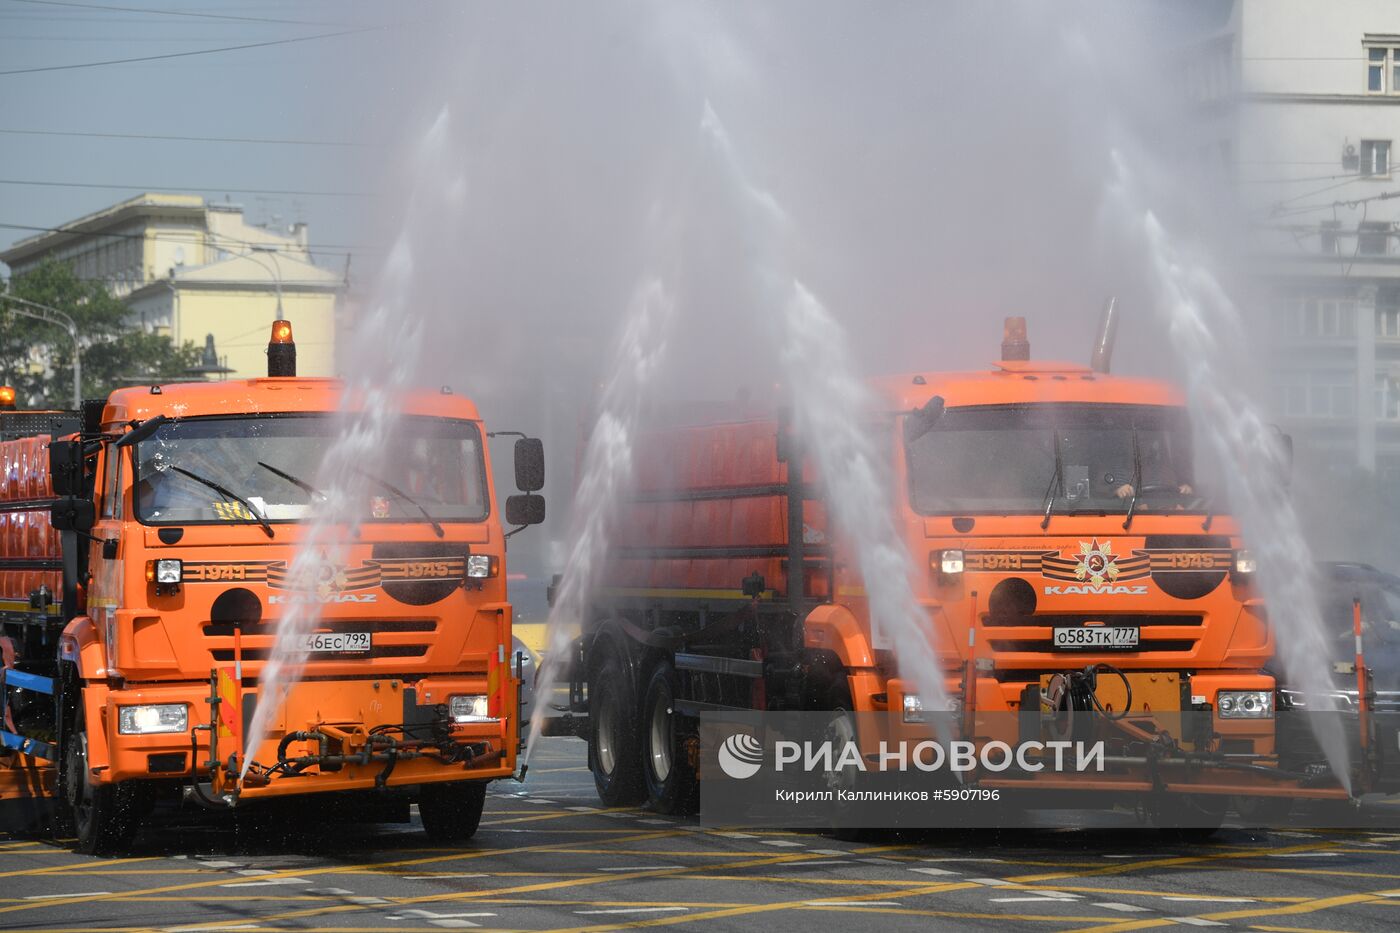 Аэрация воздуха и охлаждение дорожного покрытия в связи с жаркой погодой в Москве